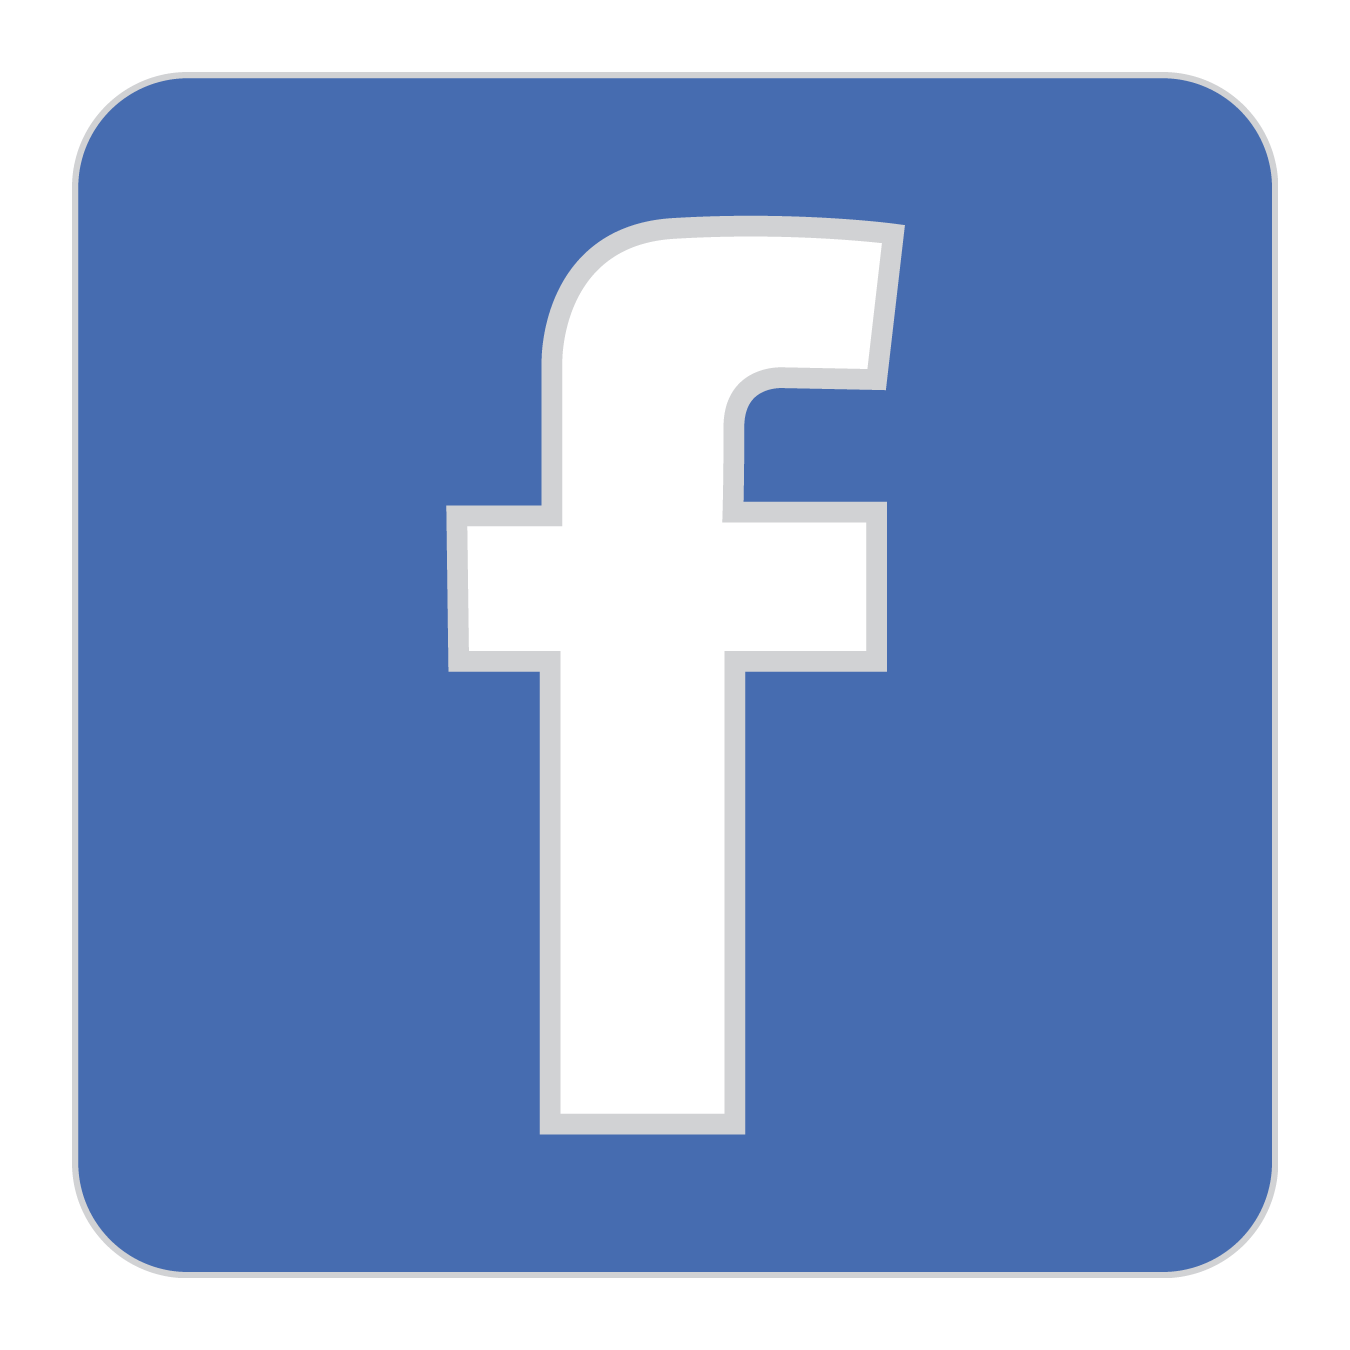 Ecapusta com. Фейсбук. Facebook логотип. Новый значок Фейсбук. Икона Фейсбук.